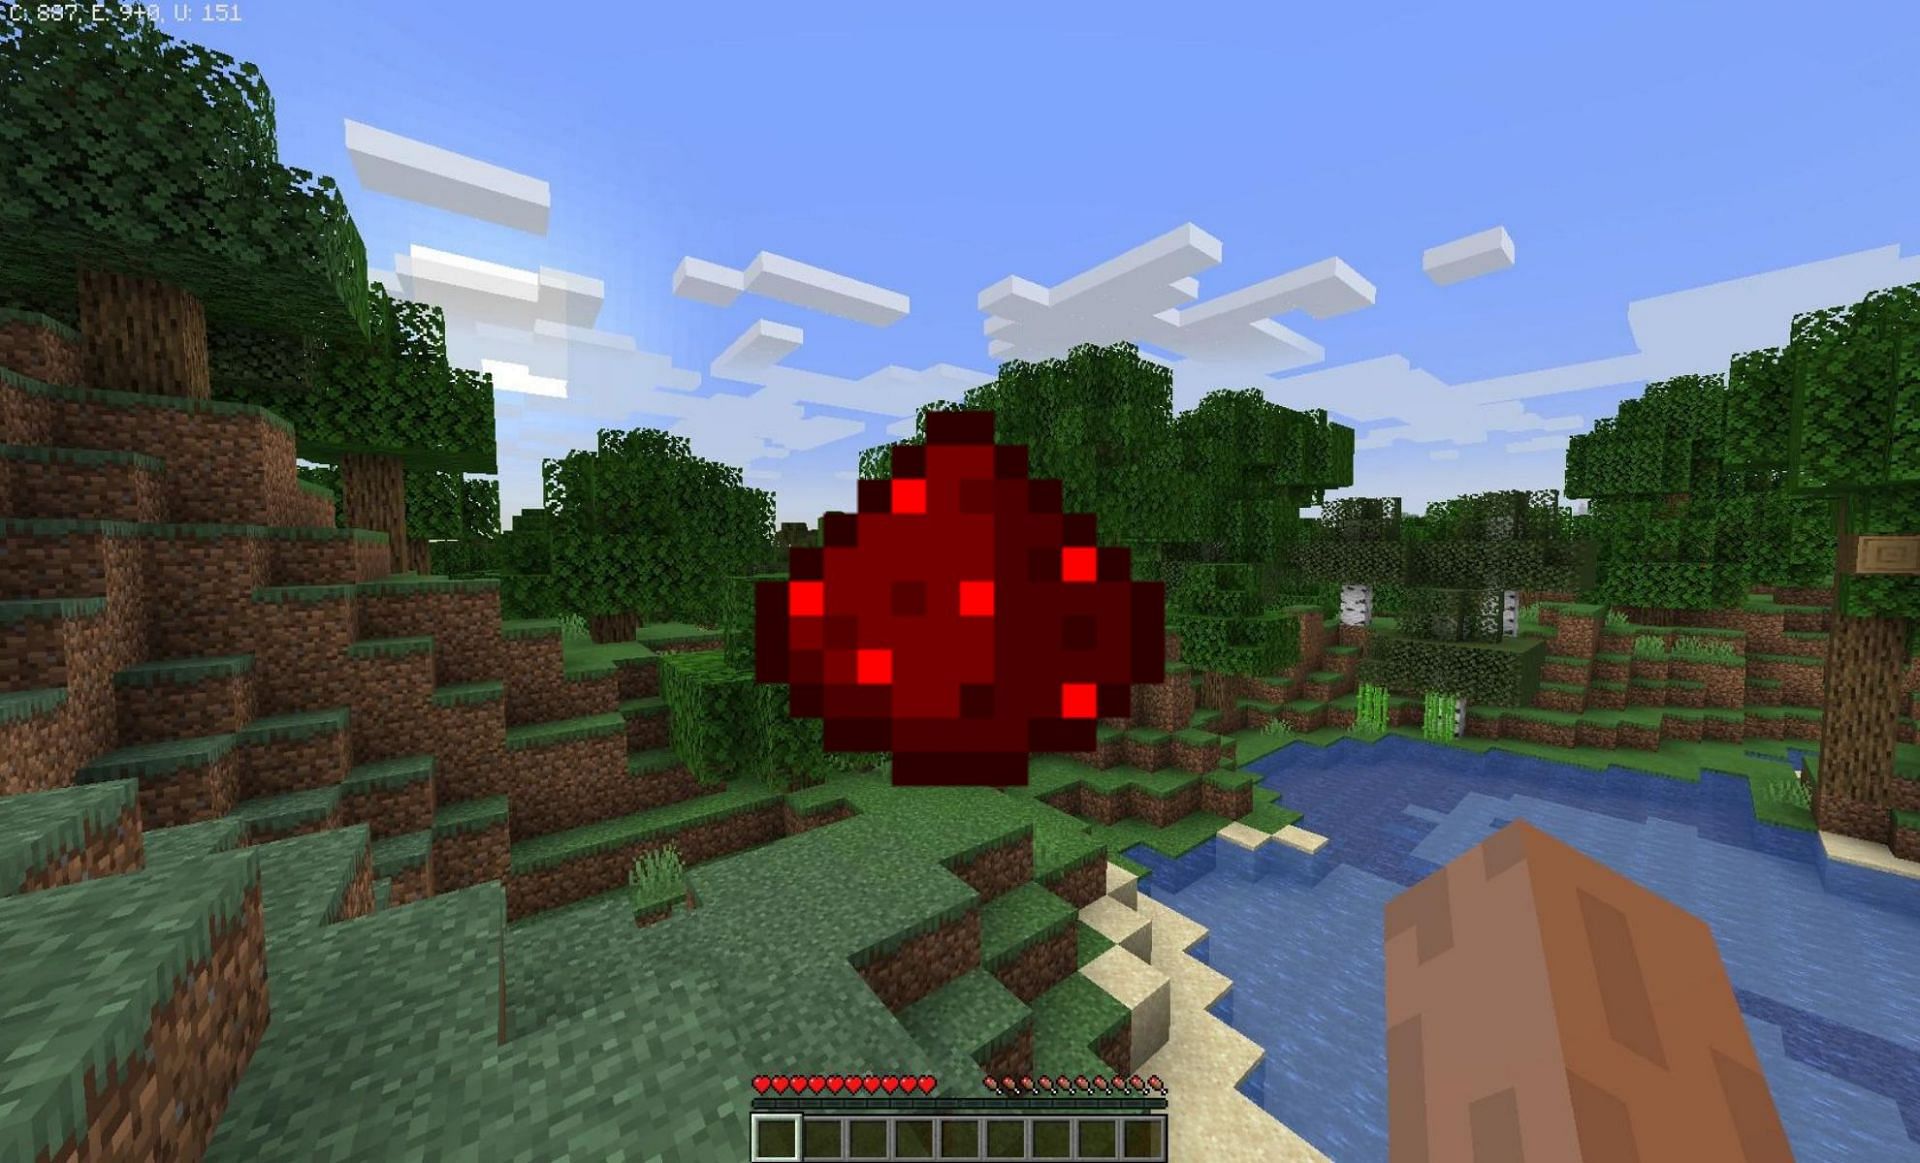 Redstone dust (Image via Minecraft Wiki)